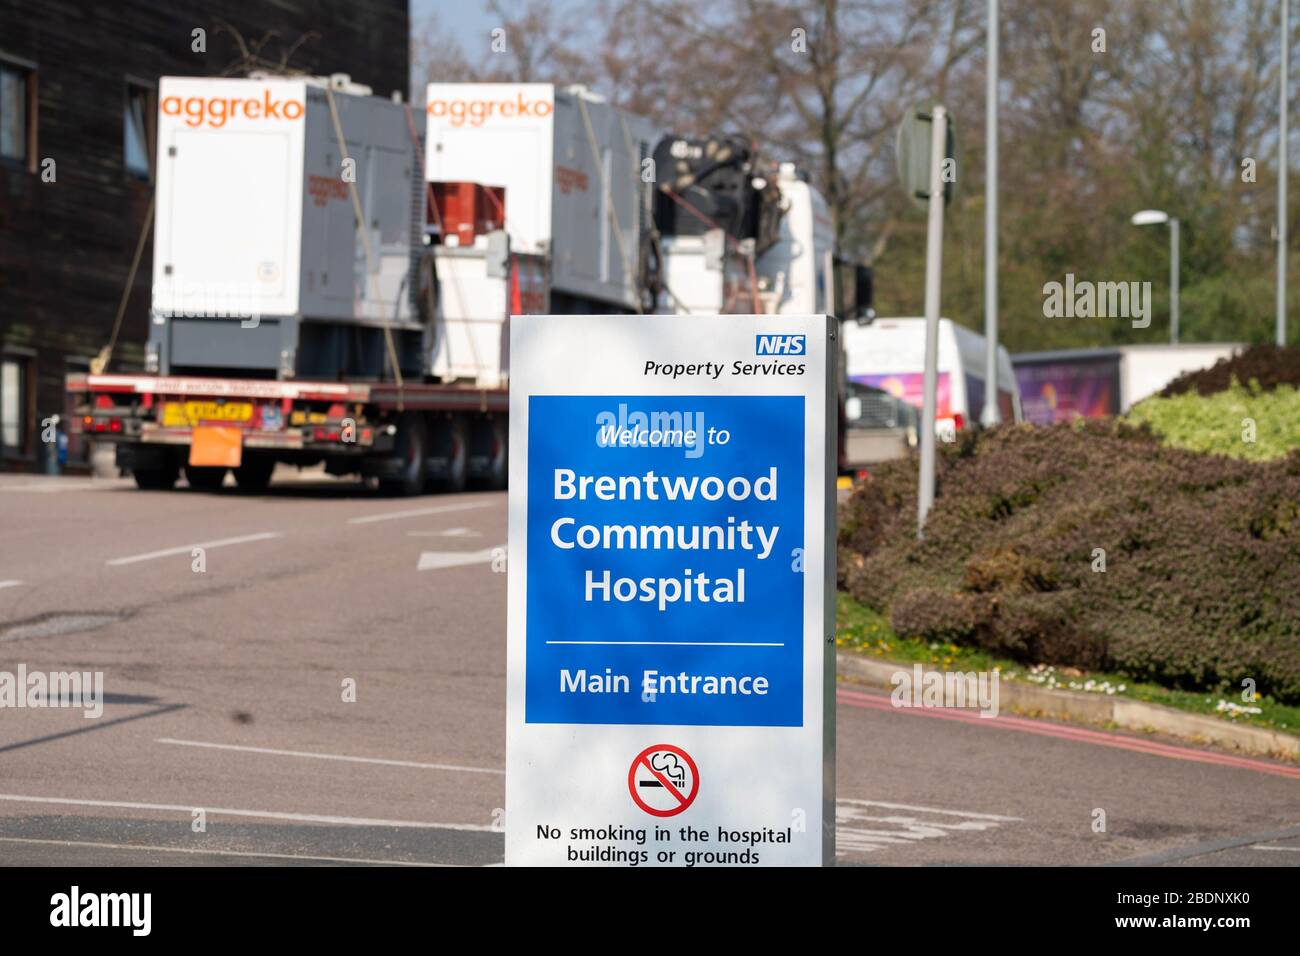 Brentwood Essex 9 aprile 2020 i lavori hanno accelerato la conversione del Brentwood Community Hospital in uno stabilimento Covid-19. I residenti riferiscono che la struttura illustrata è stata messa in su in meno di ventiquattro ore di accreditamento: Ian Davidson/Alamy Live News Foto Stock